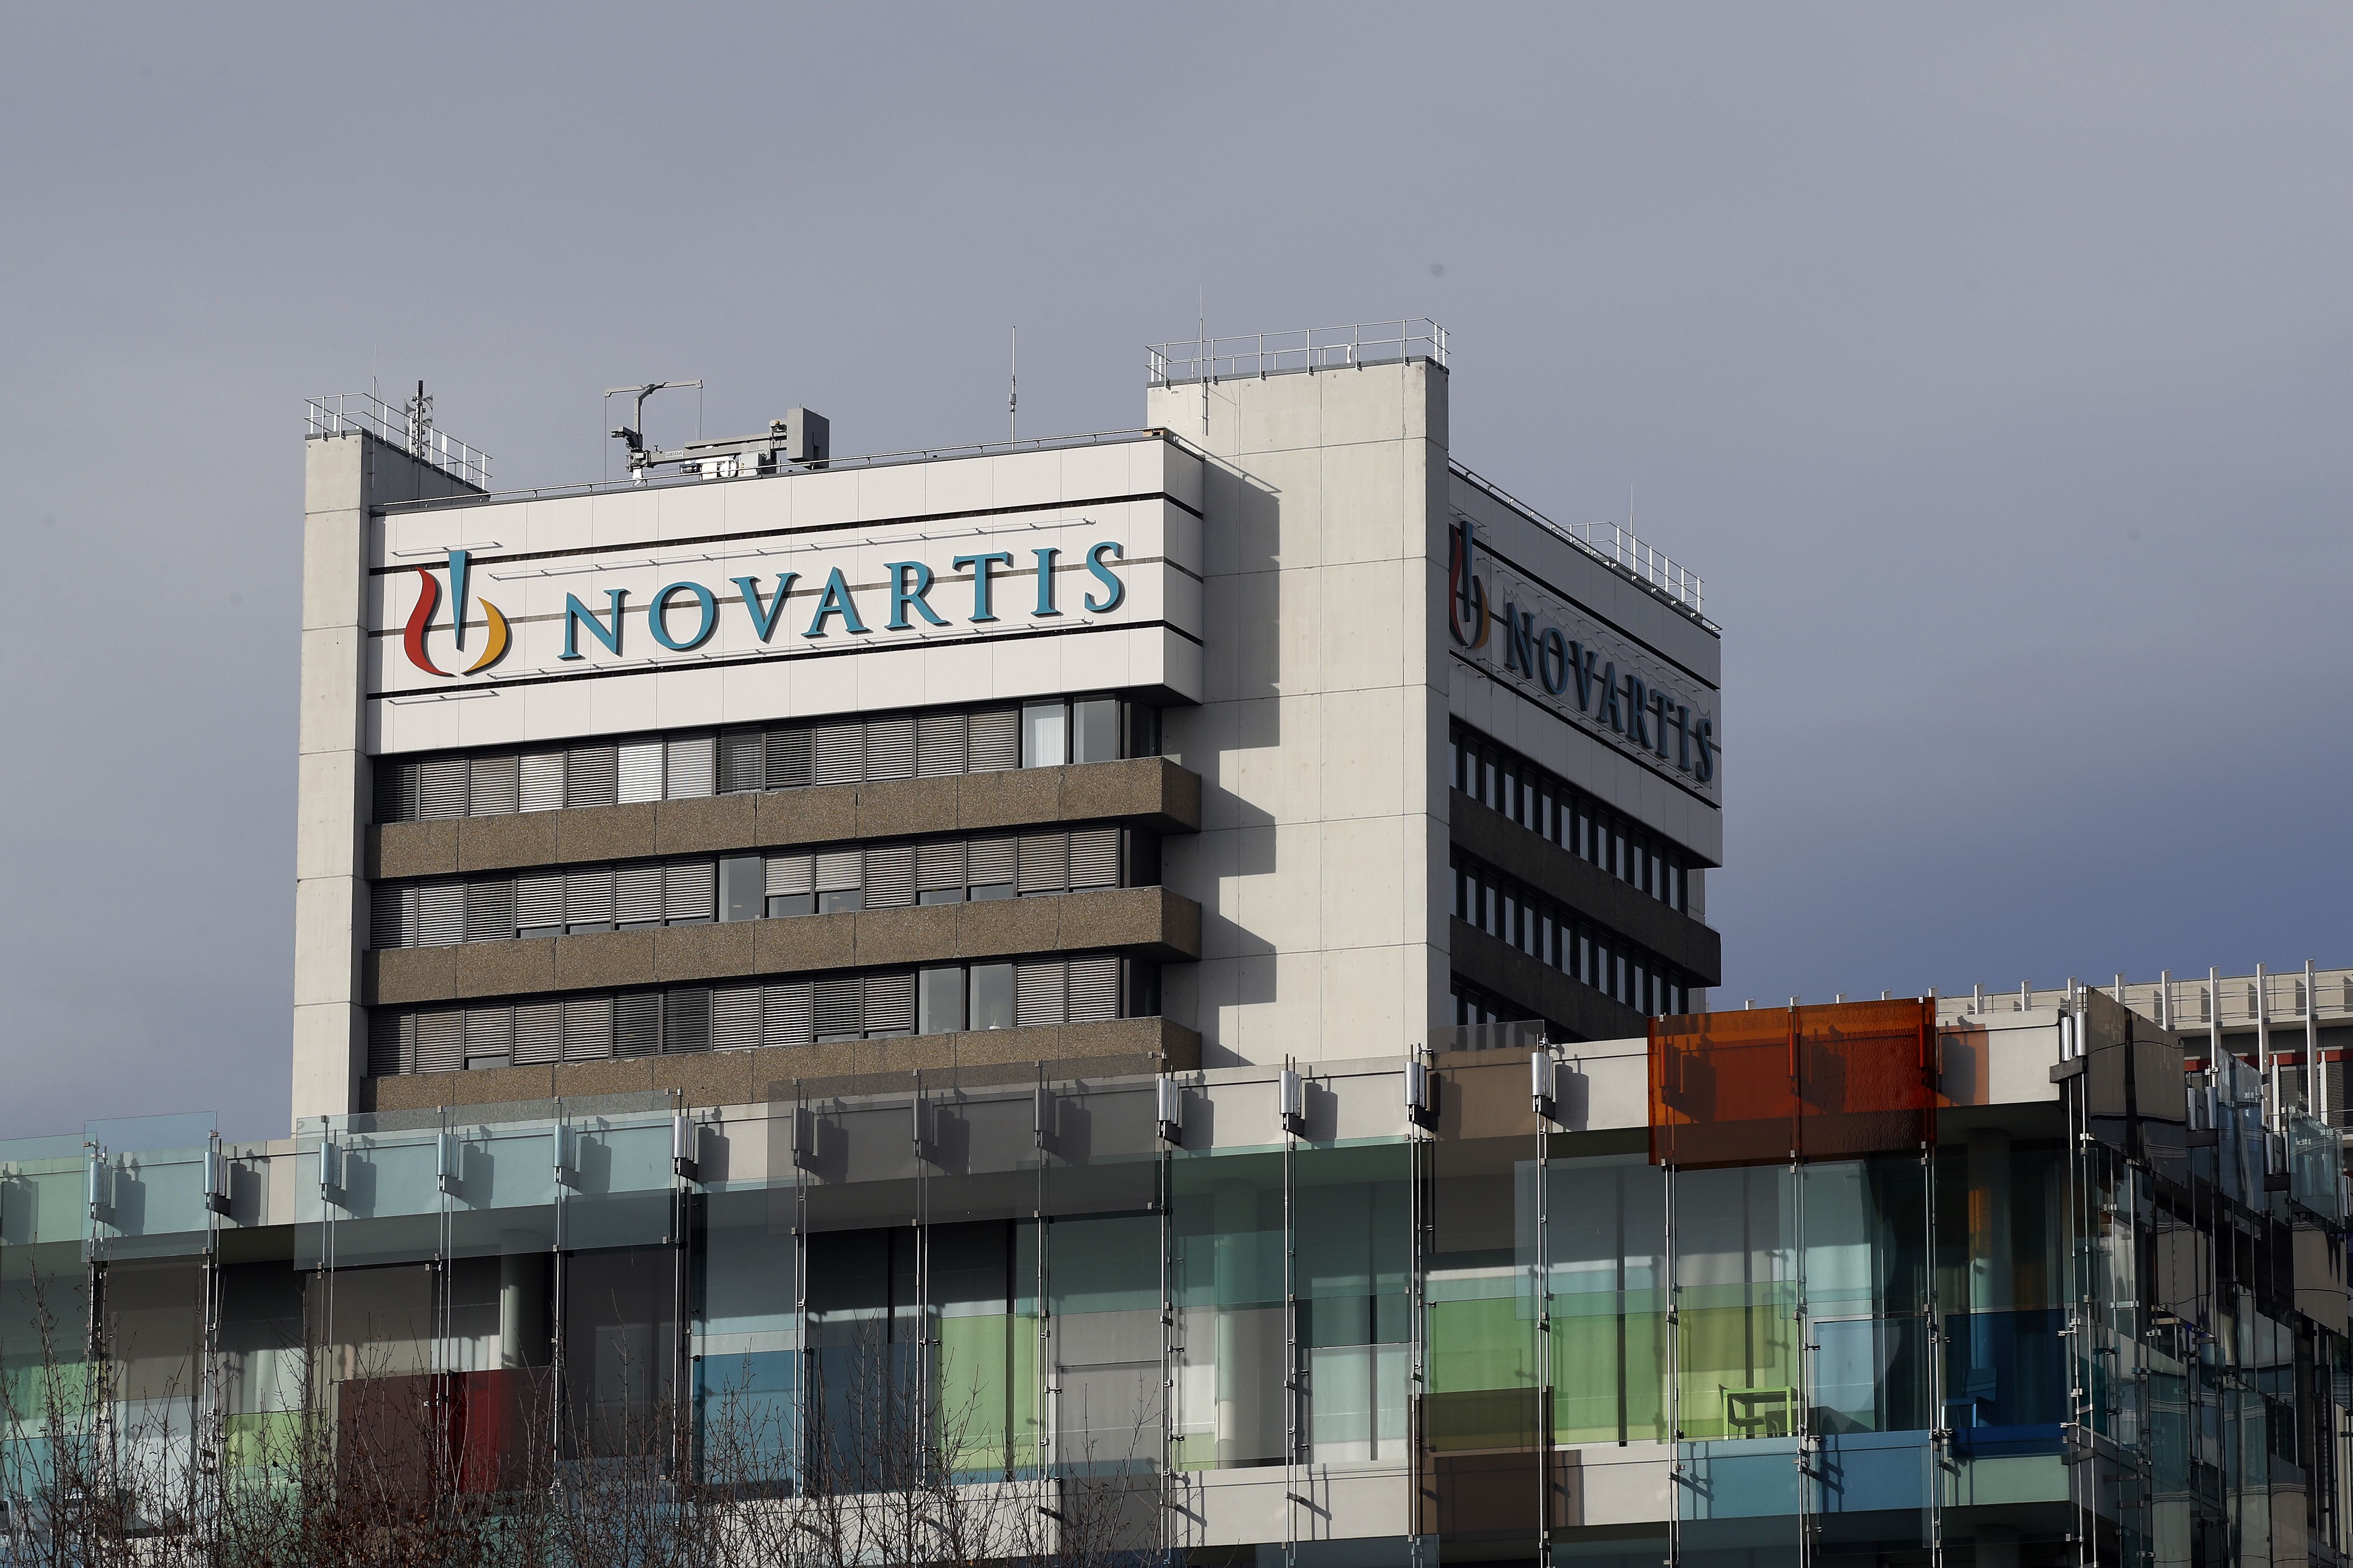 Novartis allegedly fires brother scientists over data manipulation